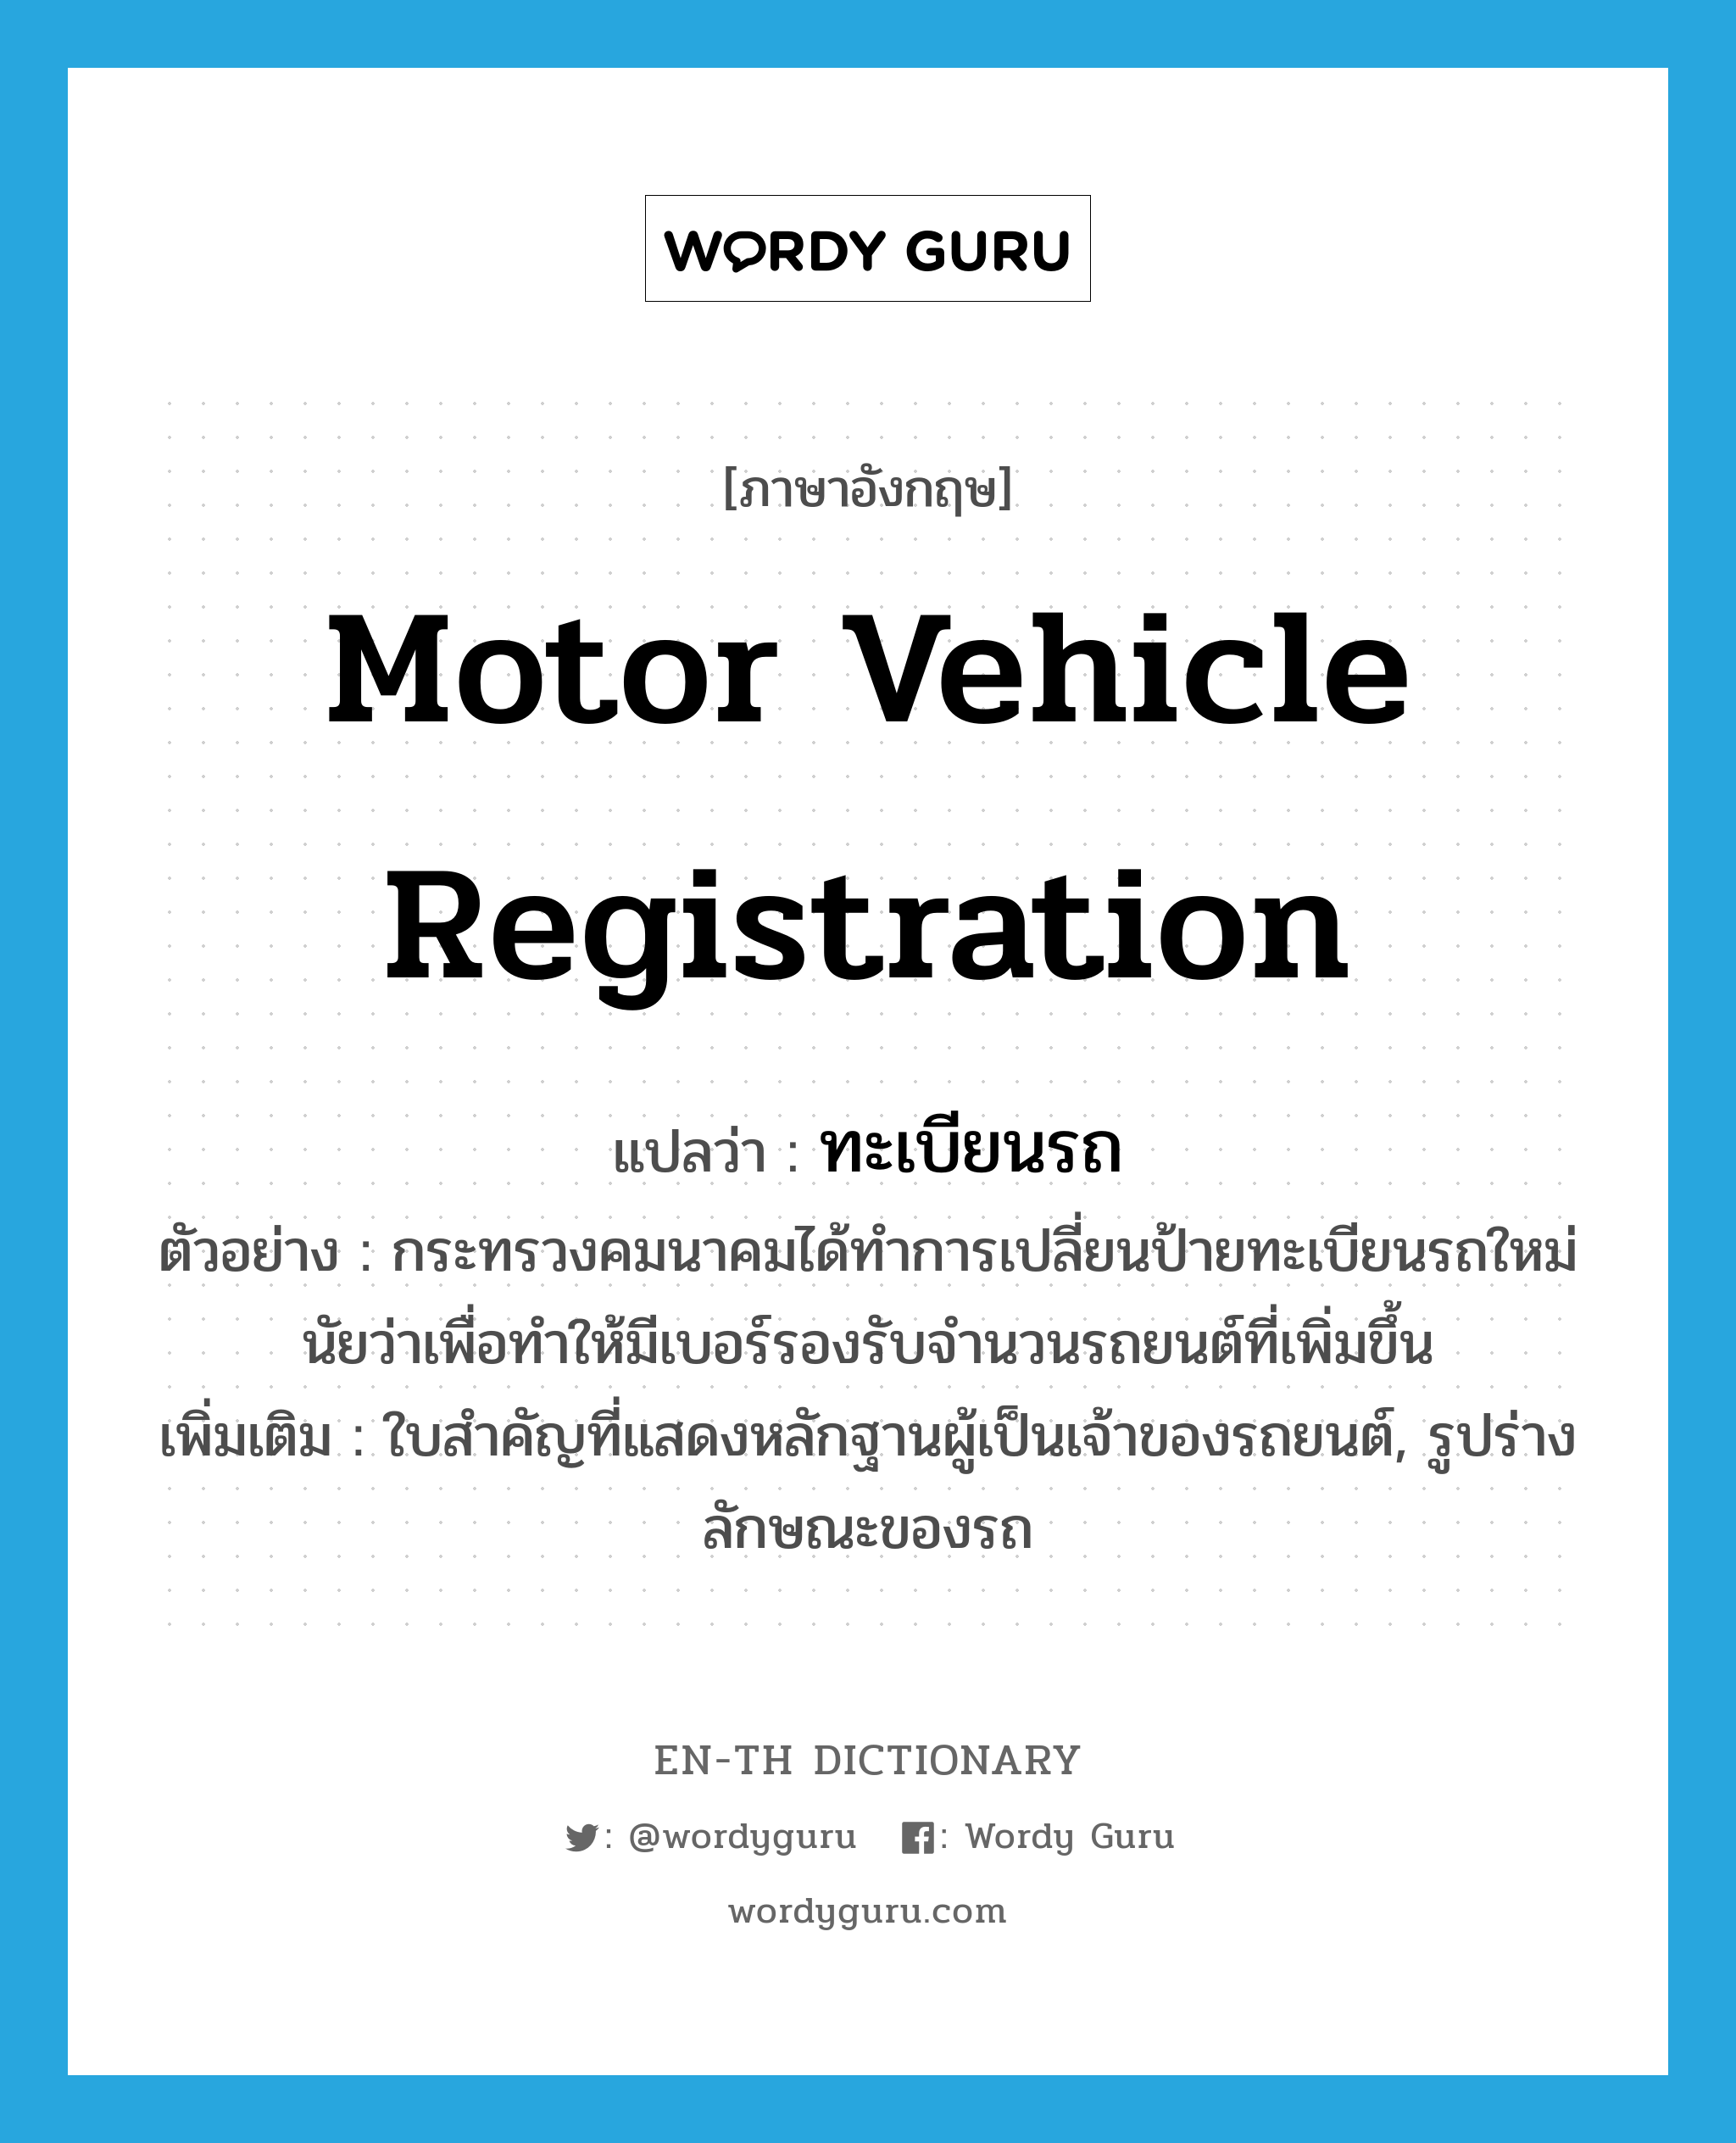 motor vehicle registration แปลว่า?, คำศัพท์ภาษาอังกฤษ motor vehicle registration แปลว่า ทะเบียนรถ ประเภท N ตัวอย่าง กระทรวงคมนาคมได้ทำการเปลี่ยนป้ายทะเบียนรถใหม่นัยว่าเพื่อทำให้มีเบอร์รองรับจำนวนรถยนต์ที่เพิ่มขึ้น เพิ่มเติม ใบสำคัญที่แสดงหลักฐานผู้เป็นเจ้าของรถยนต์, รูปร่างลักษณะของรถ หมวด N